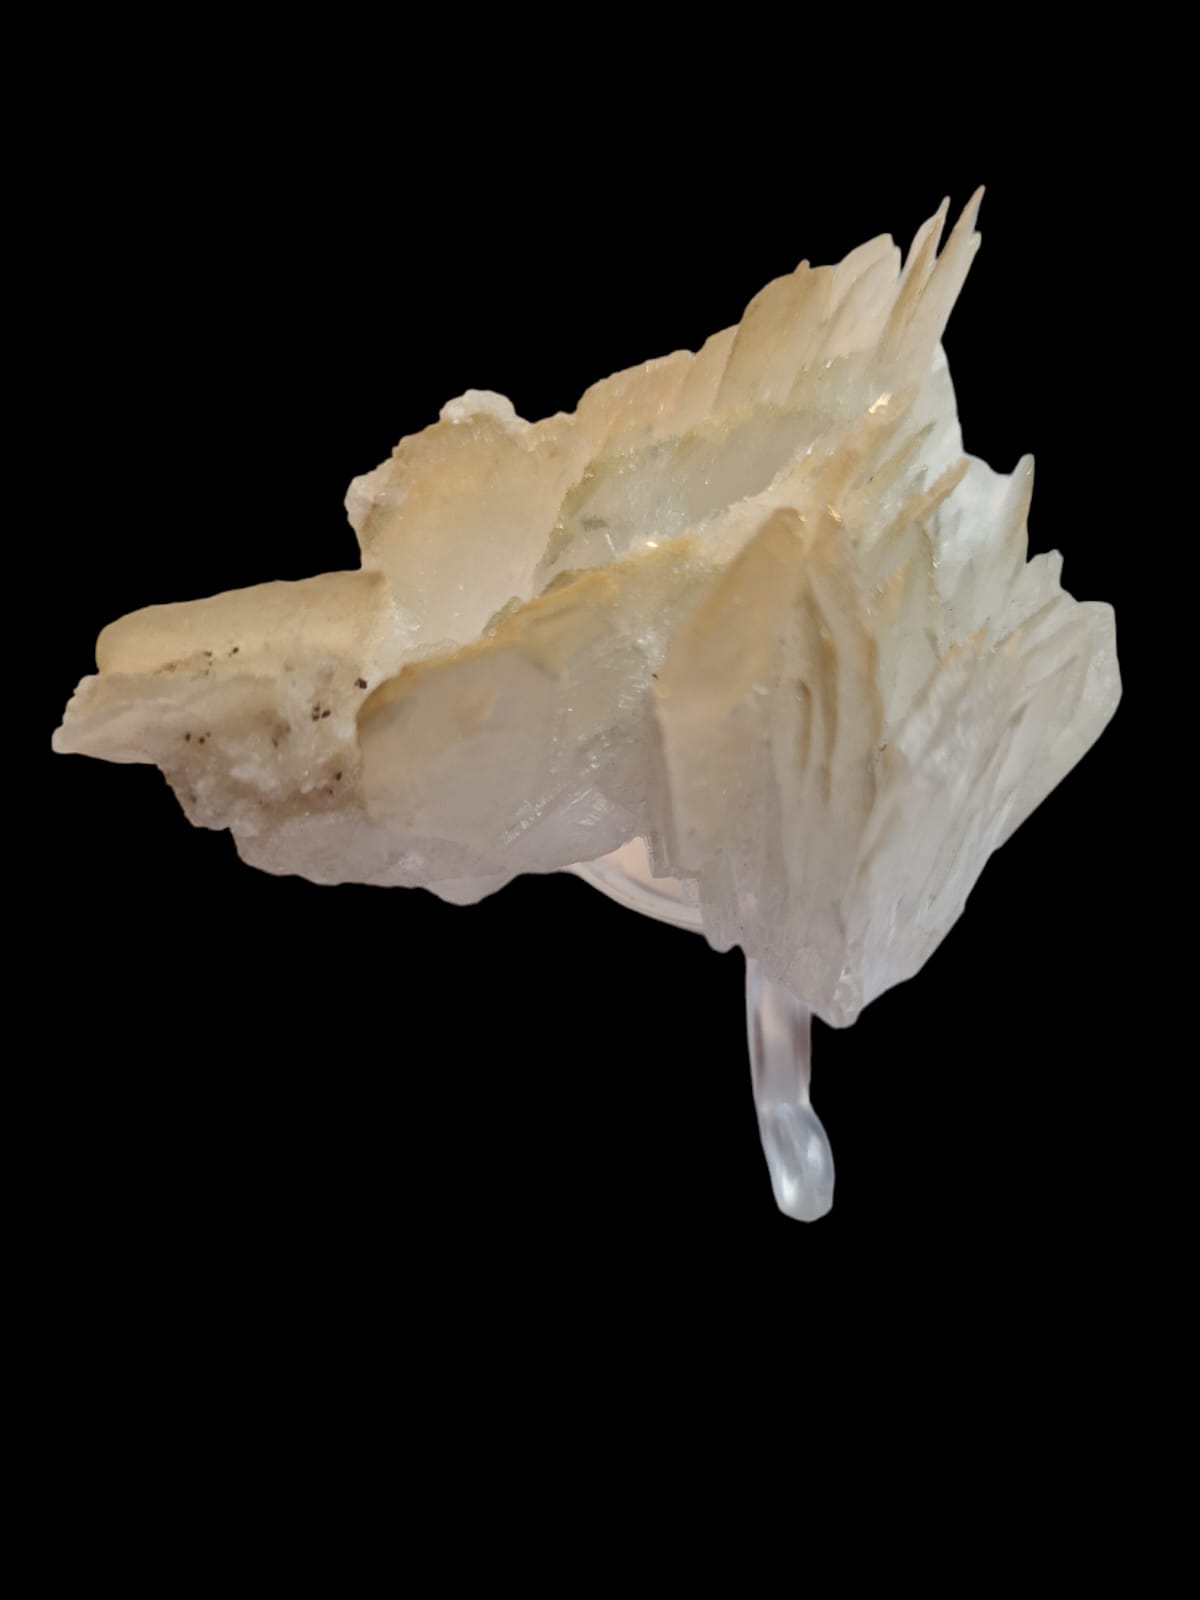 Golden White Celestine/Celestite Mineral Specimen Cluster